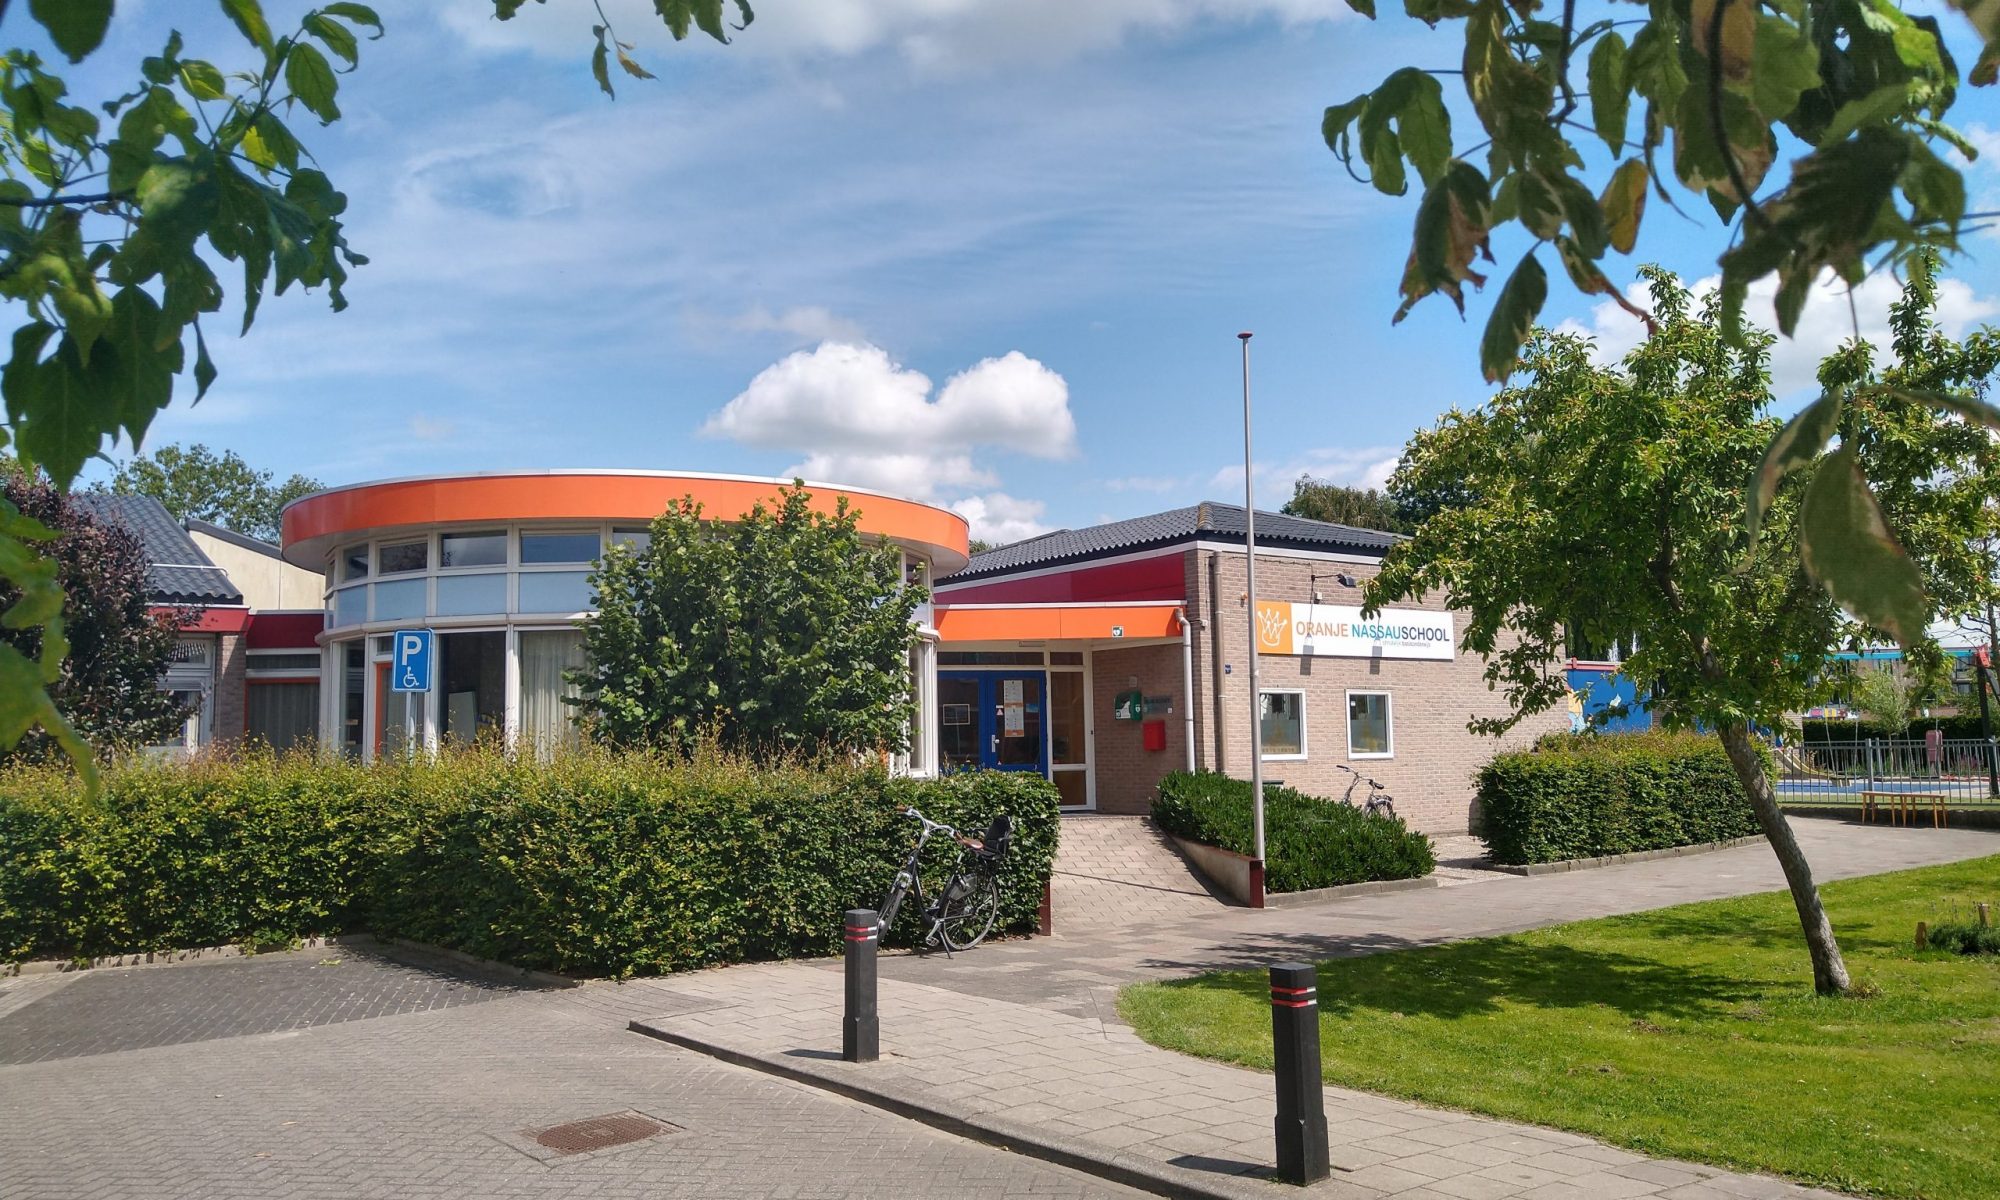 Oranje-Nassauschool Stolwijk